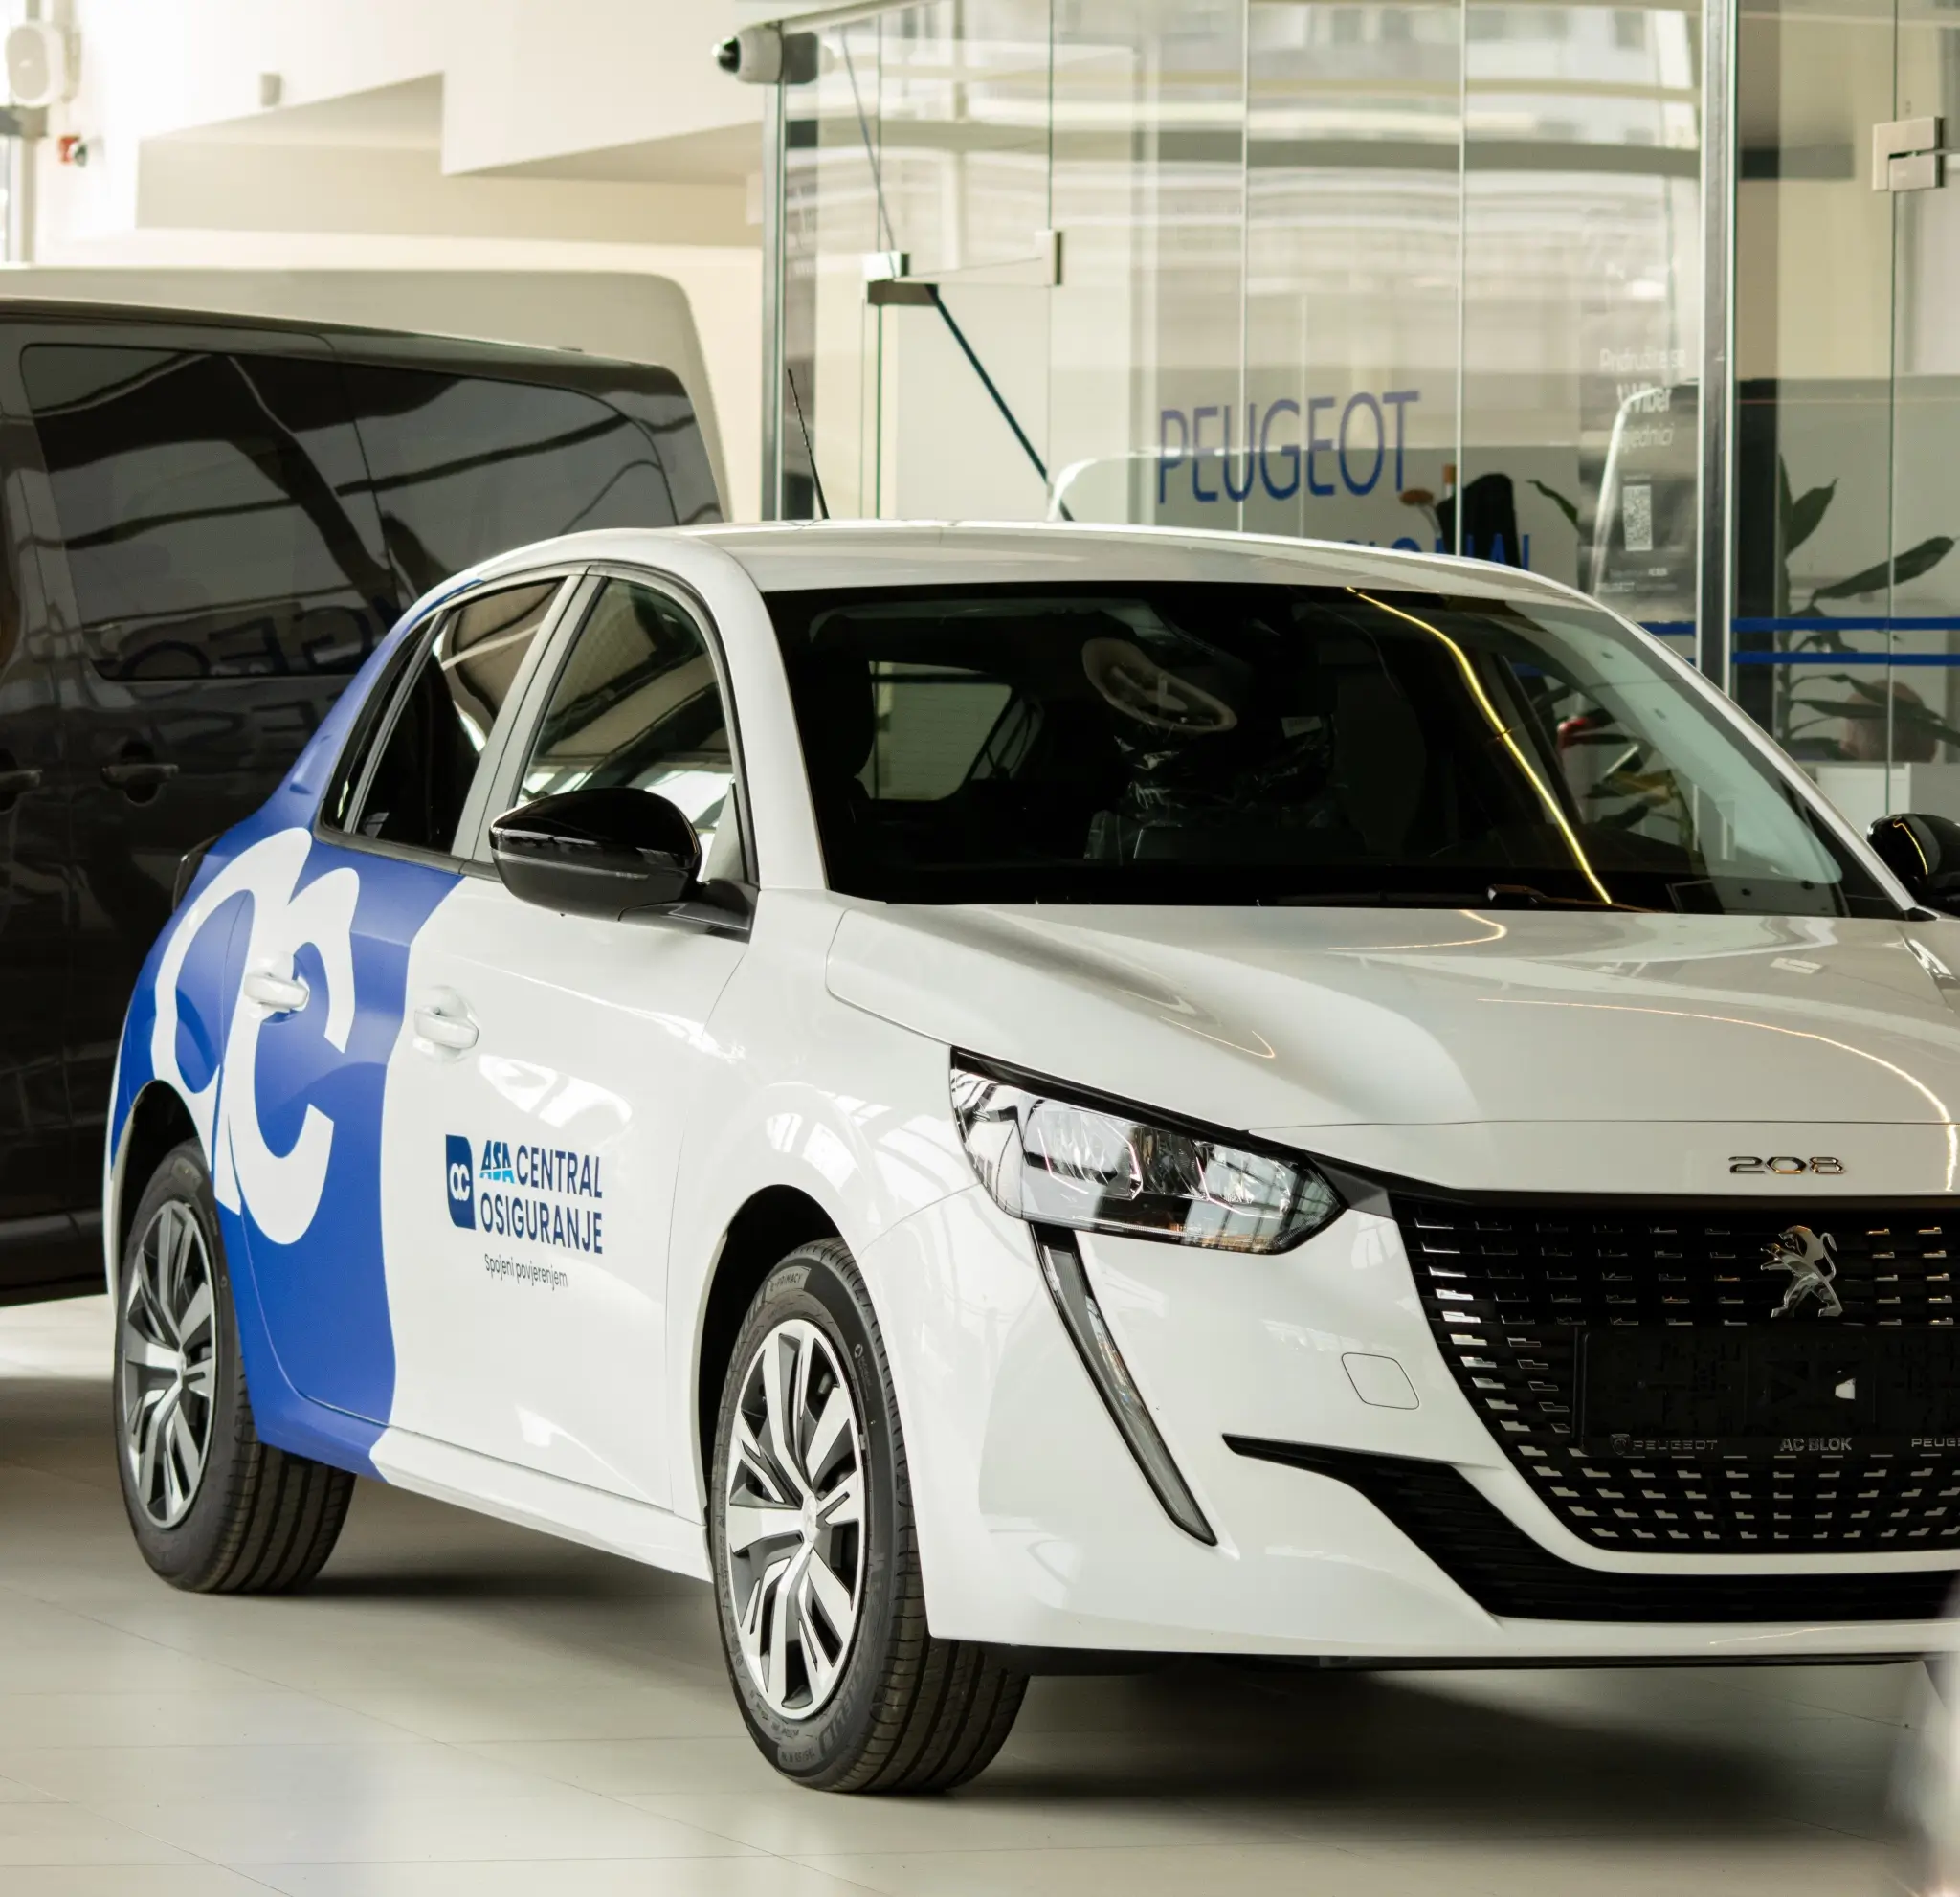 Peugeot Sarajevo i ASA CENTRAL osiguranje - 12 novih vozila rezultat su uspješne saradnje